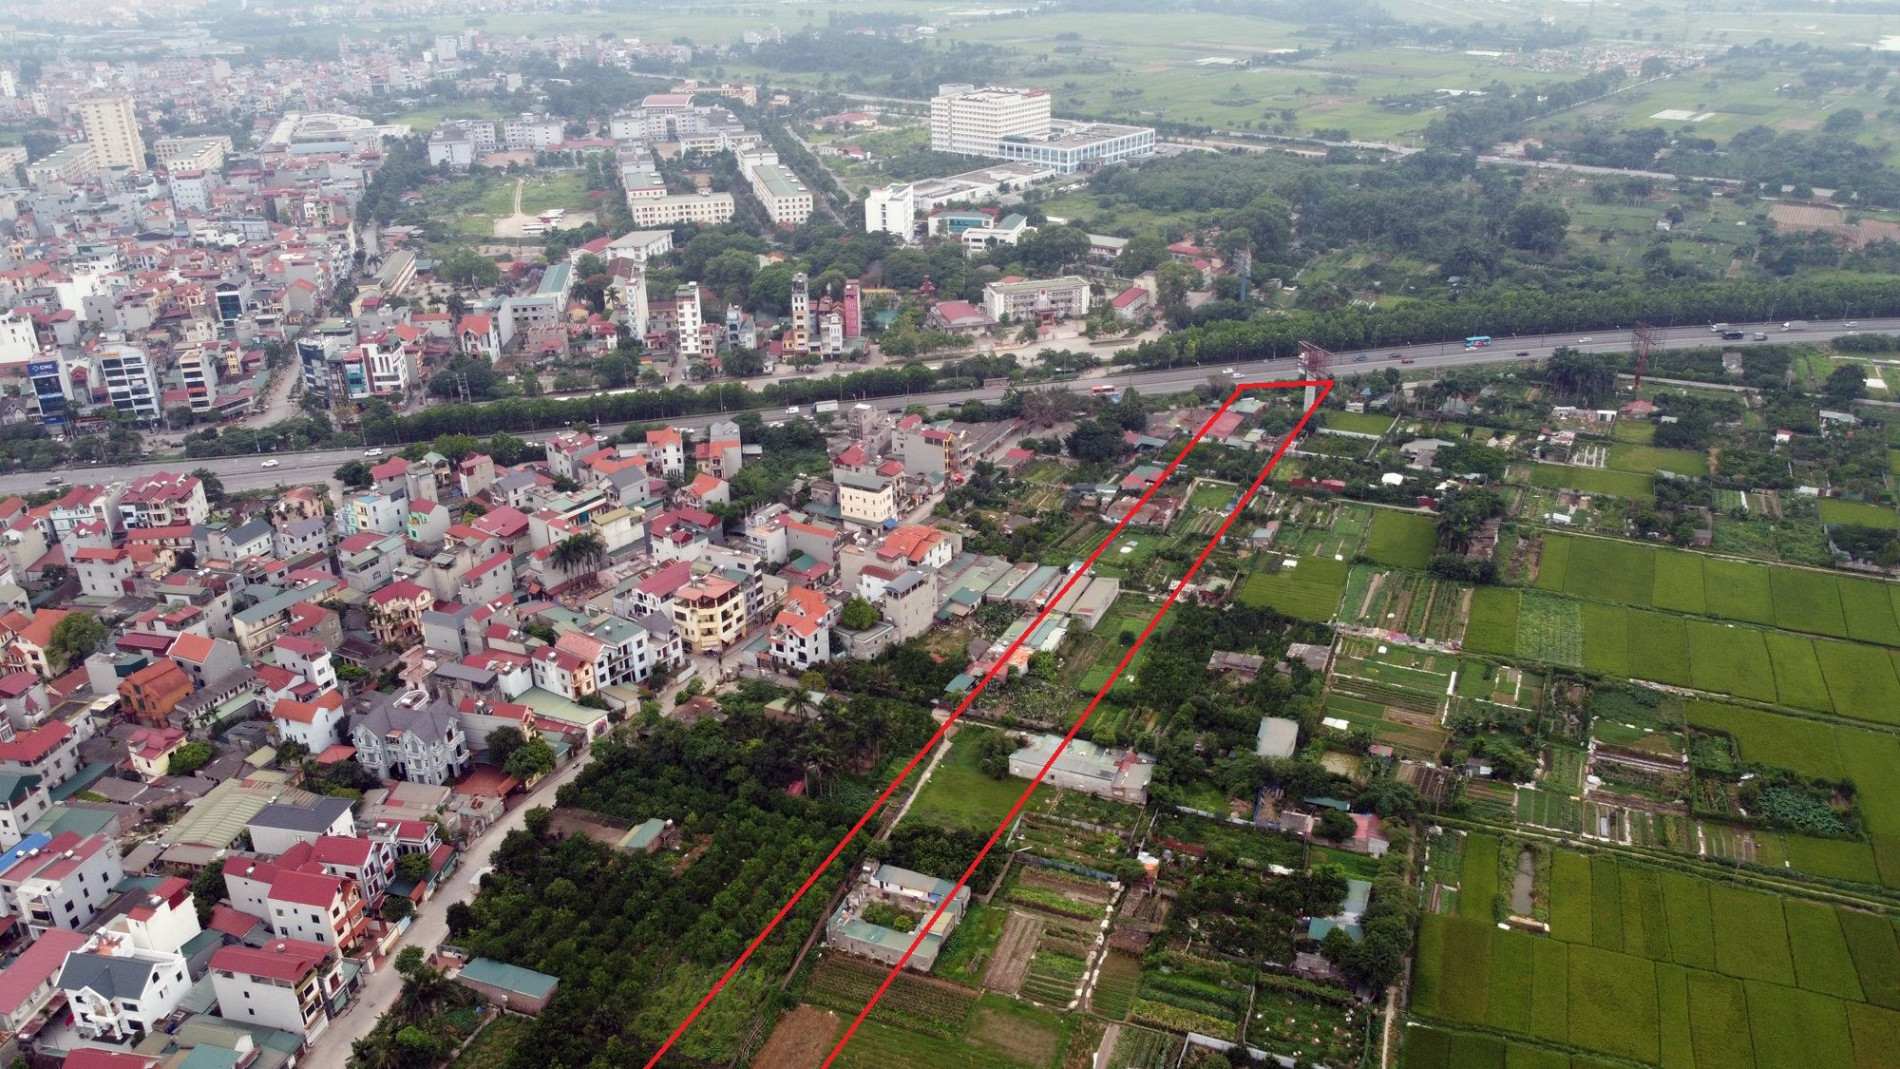 Đường sẽ mở theo quy hoạch ở xã Kim Chung, Đông Anh, Hà Nội (phần 4)